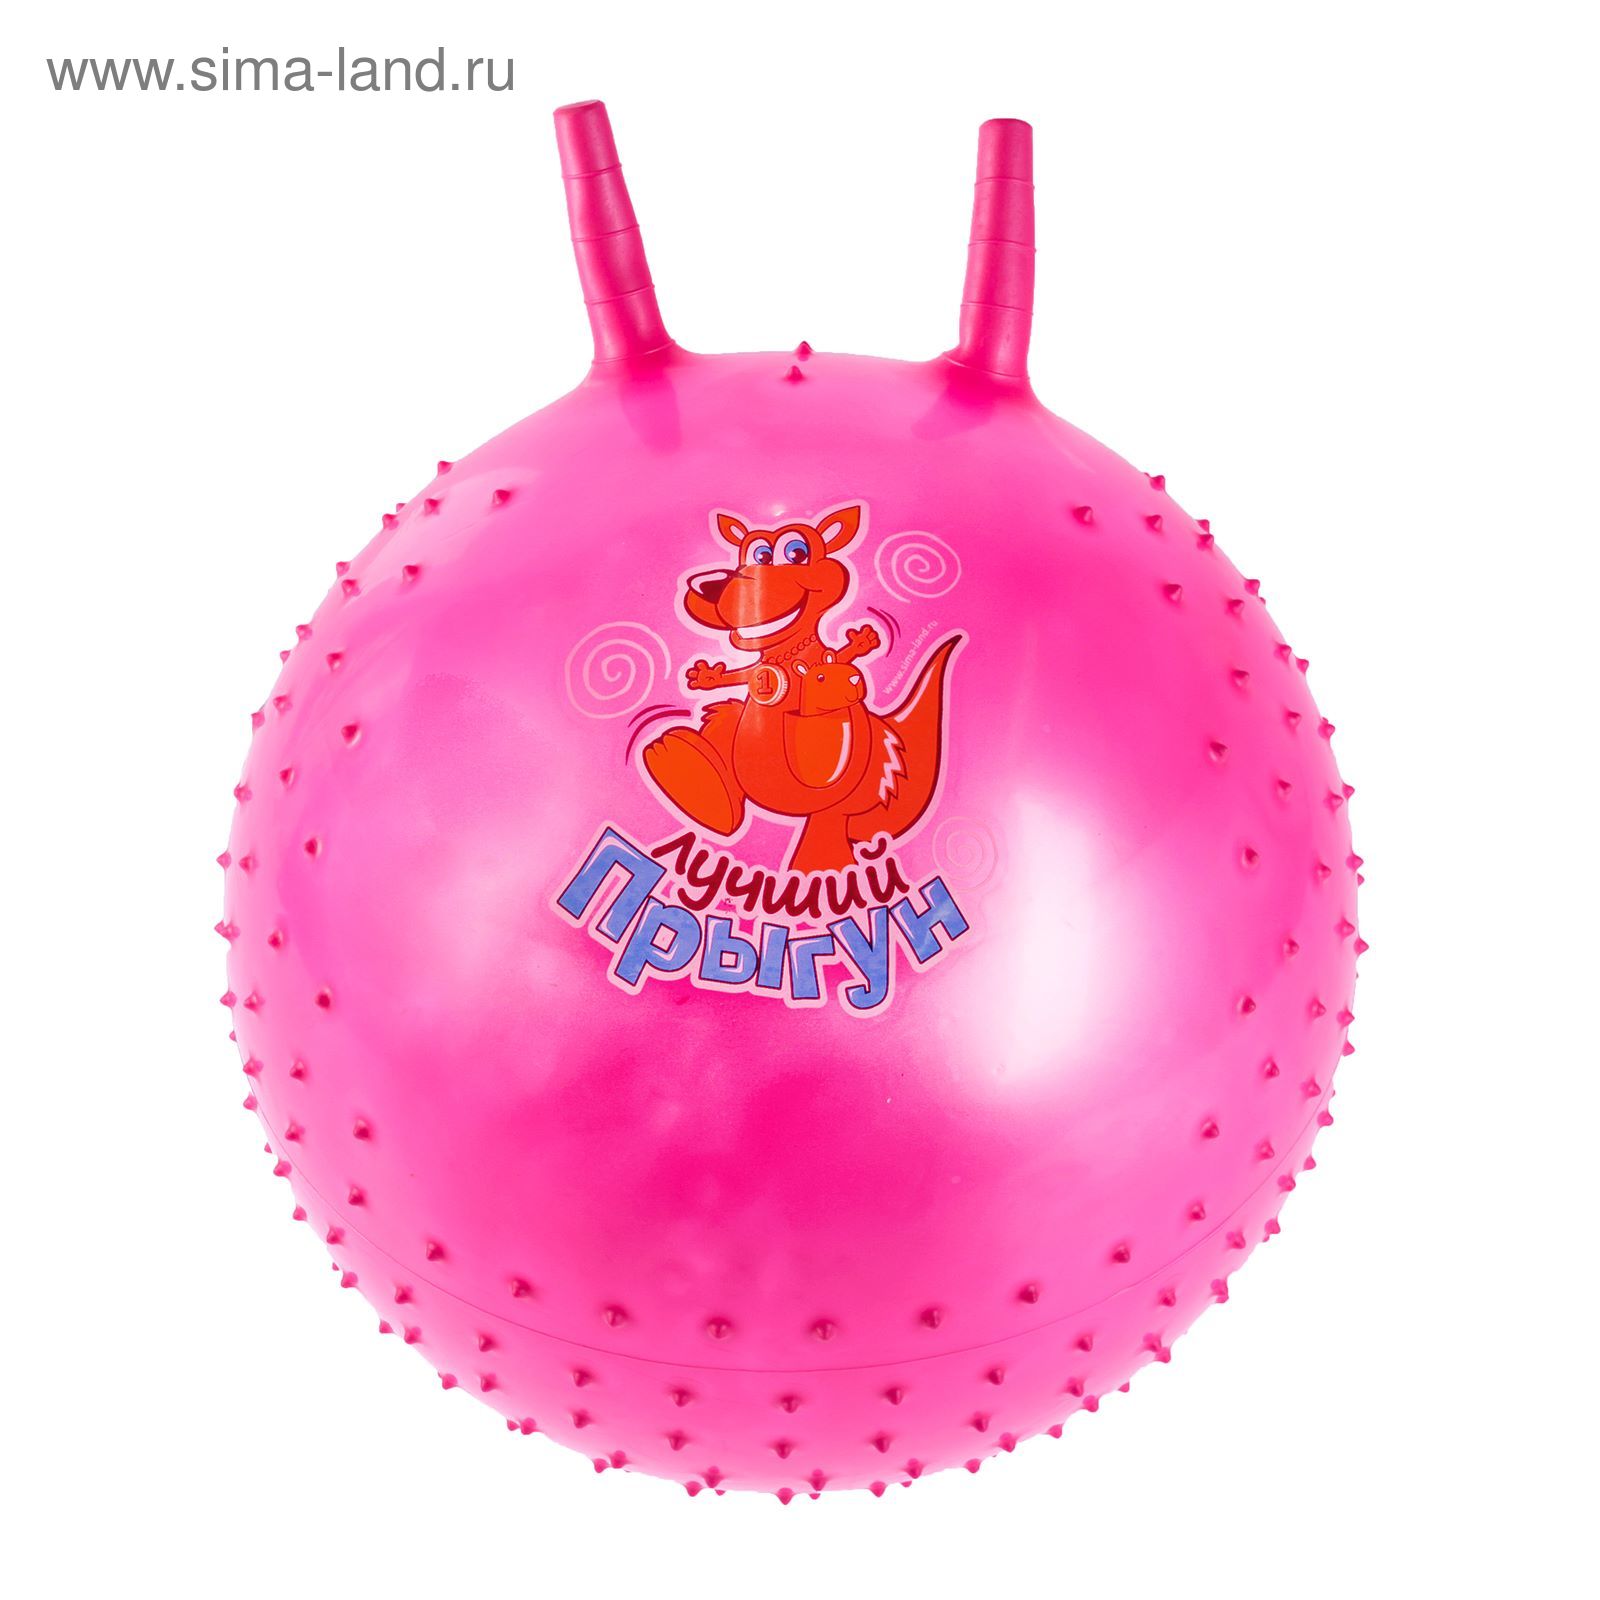 Мяч попрыгун с рожками массажный d=55 см, 420 гр, цвета микс